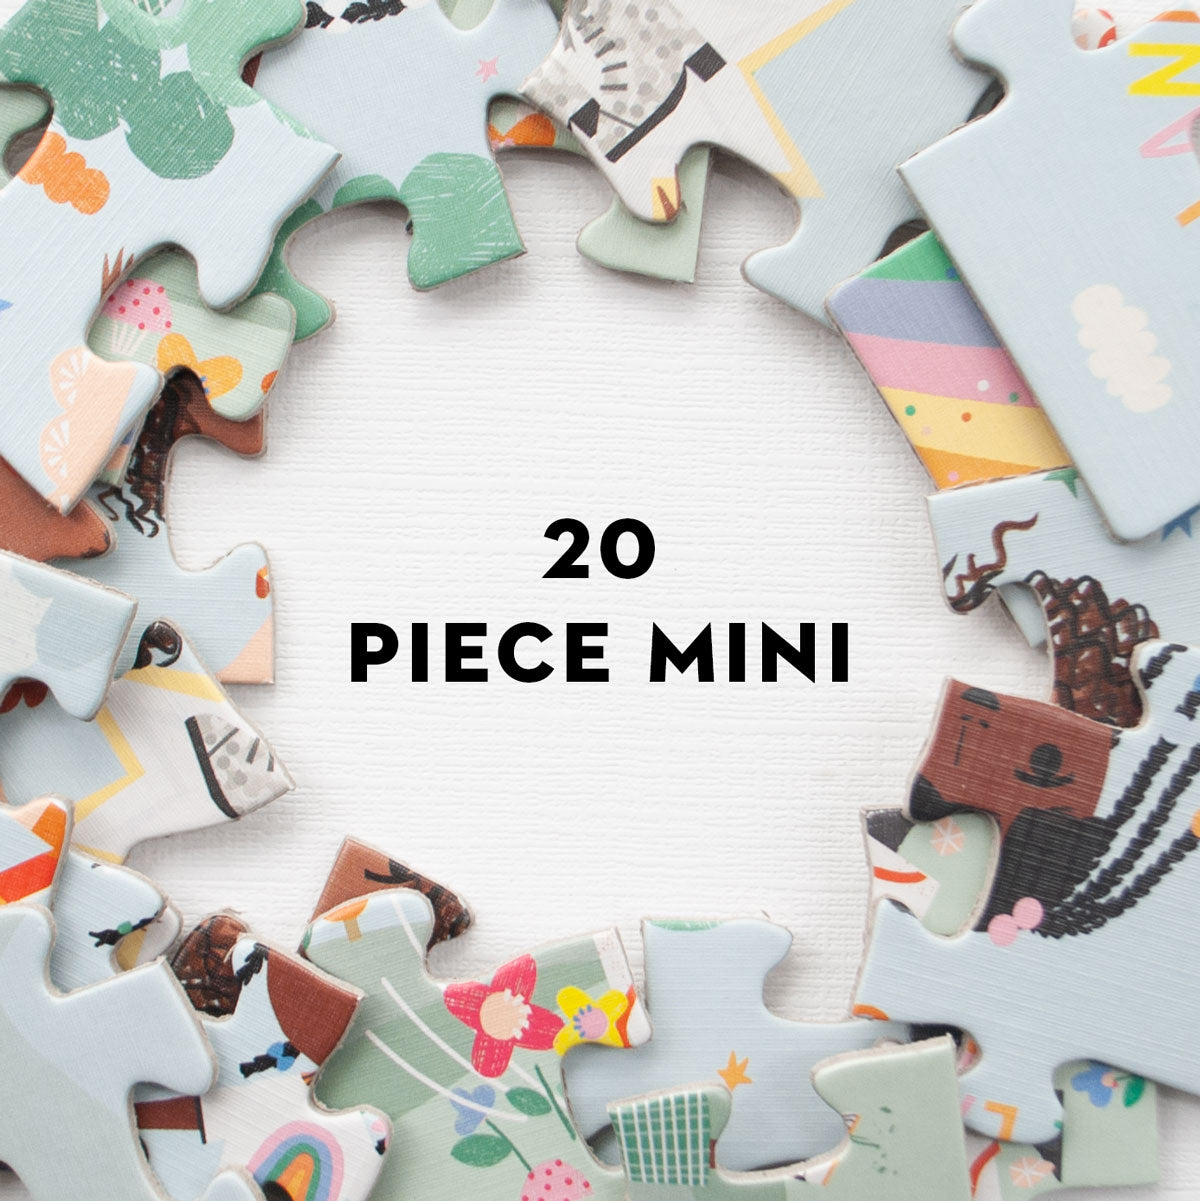 20 Piece mini